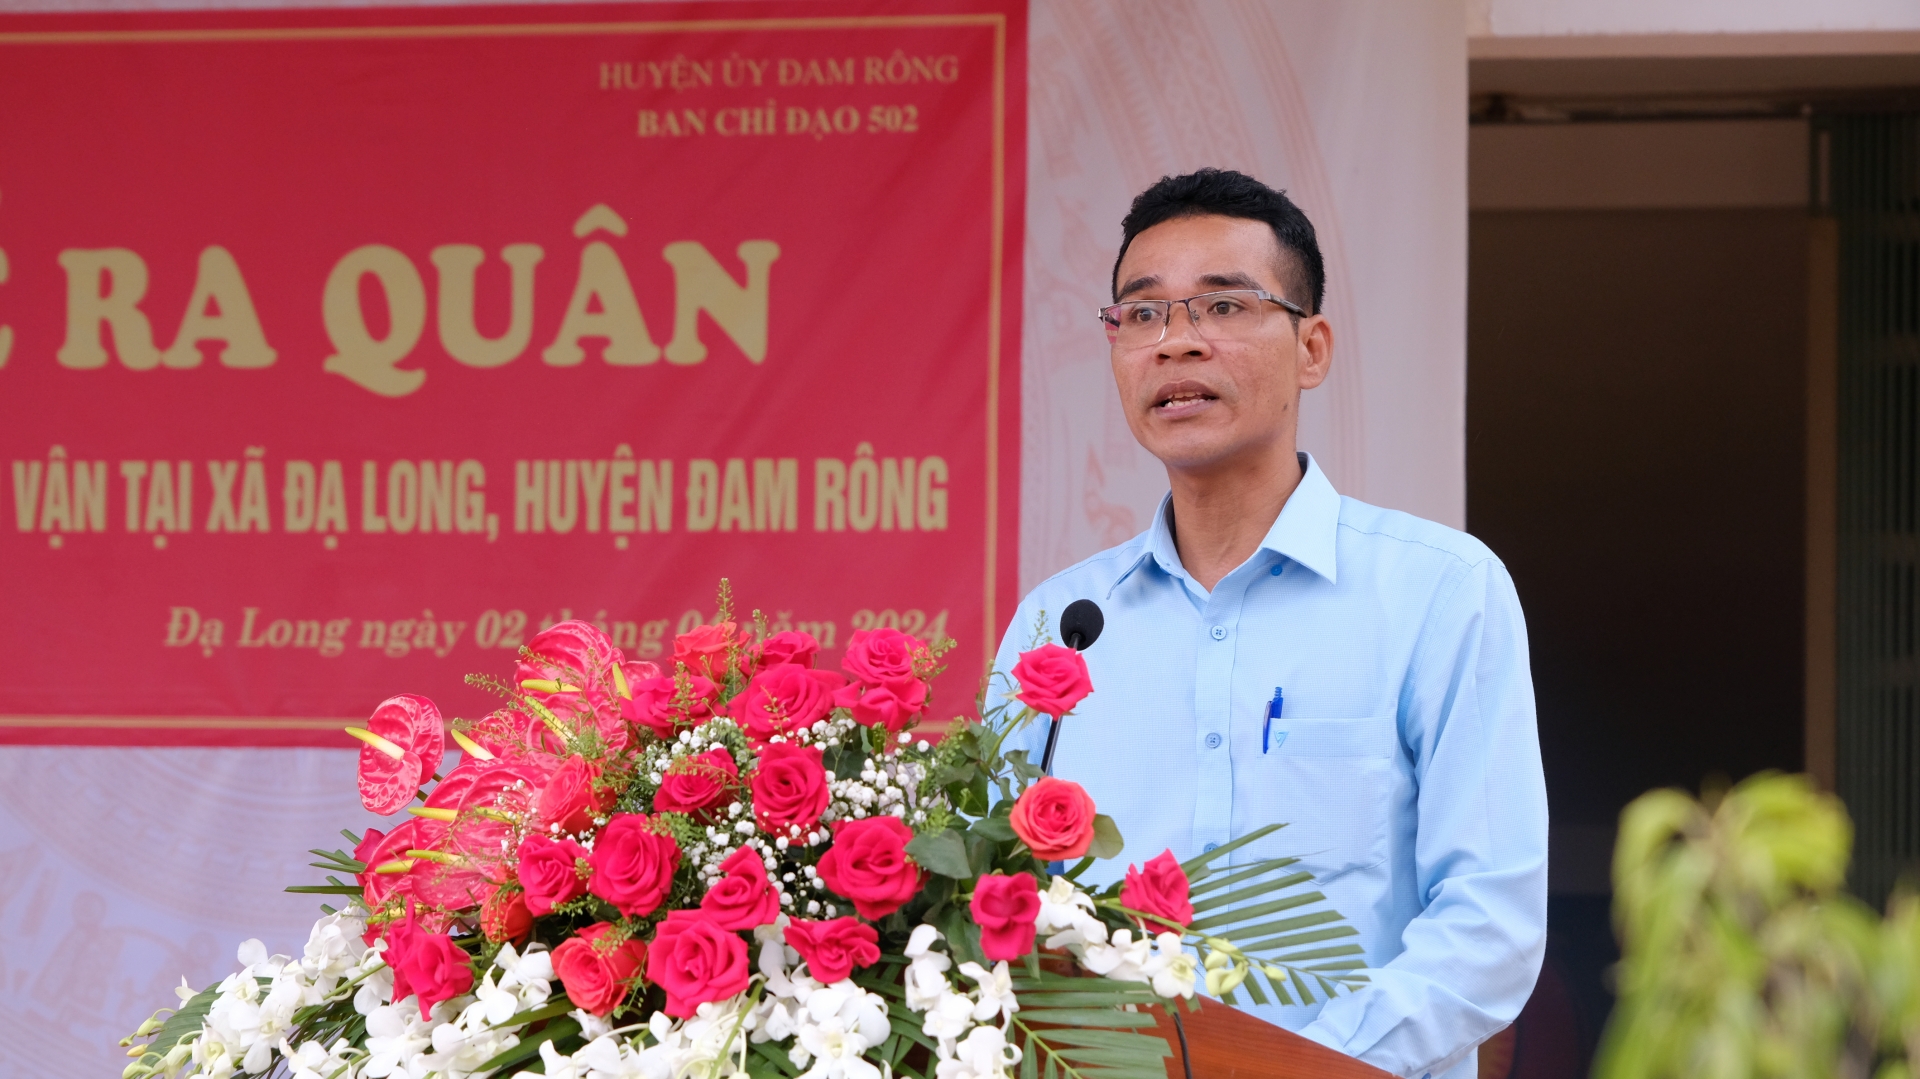 Đồng chí Lơ Mu Ha Poh - Bí thư Đảng ủy xã Đạ Long phát biểu cảm ơn Ban Chỉ đạo 502